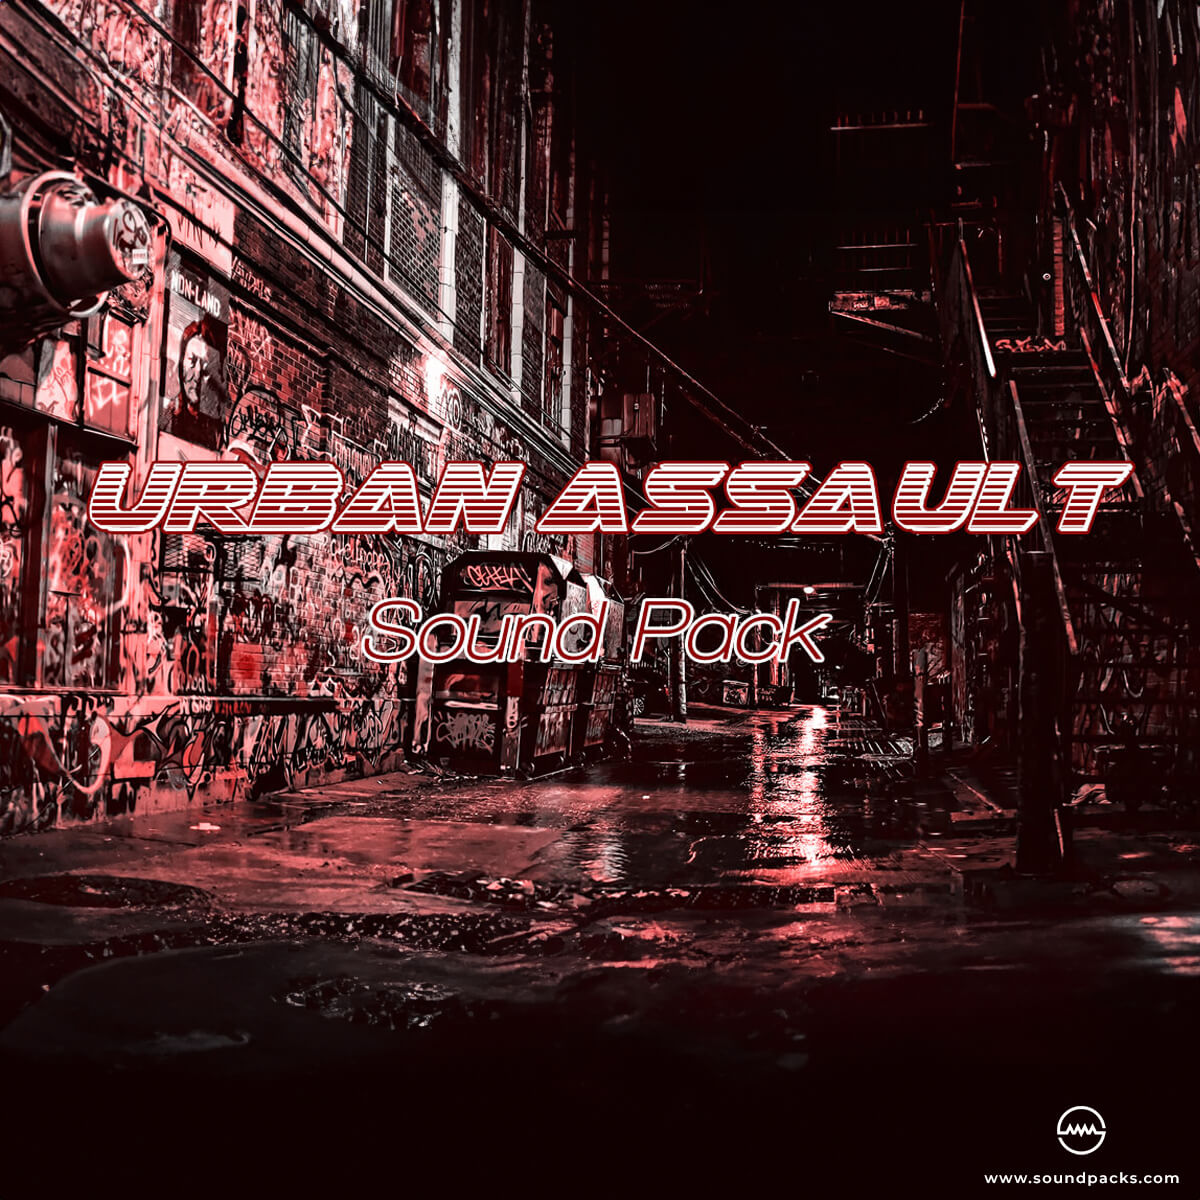 Urban Assault Sound Pack